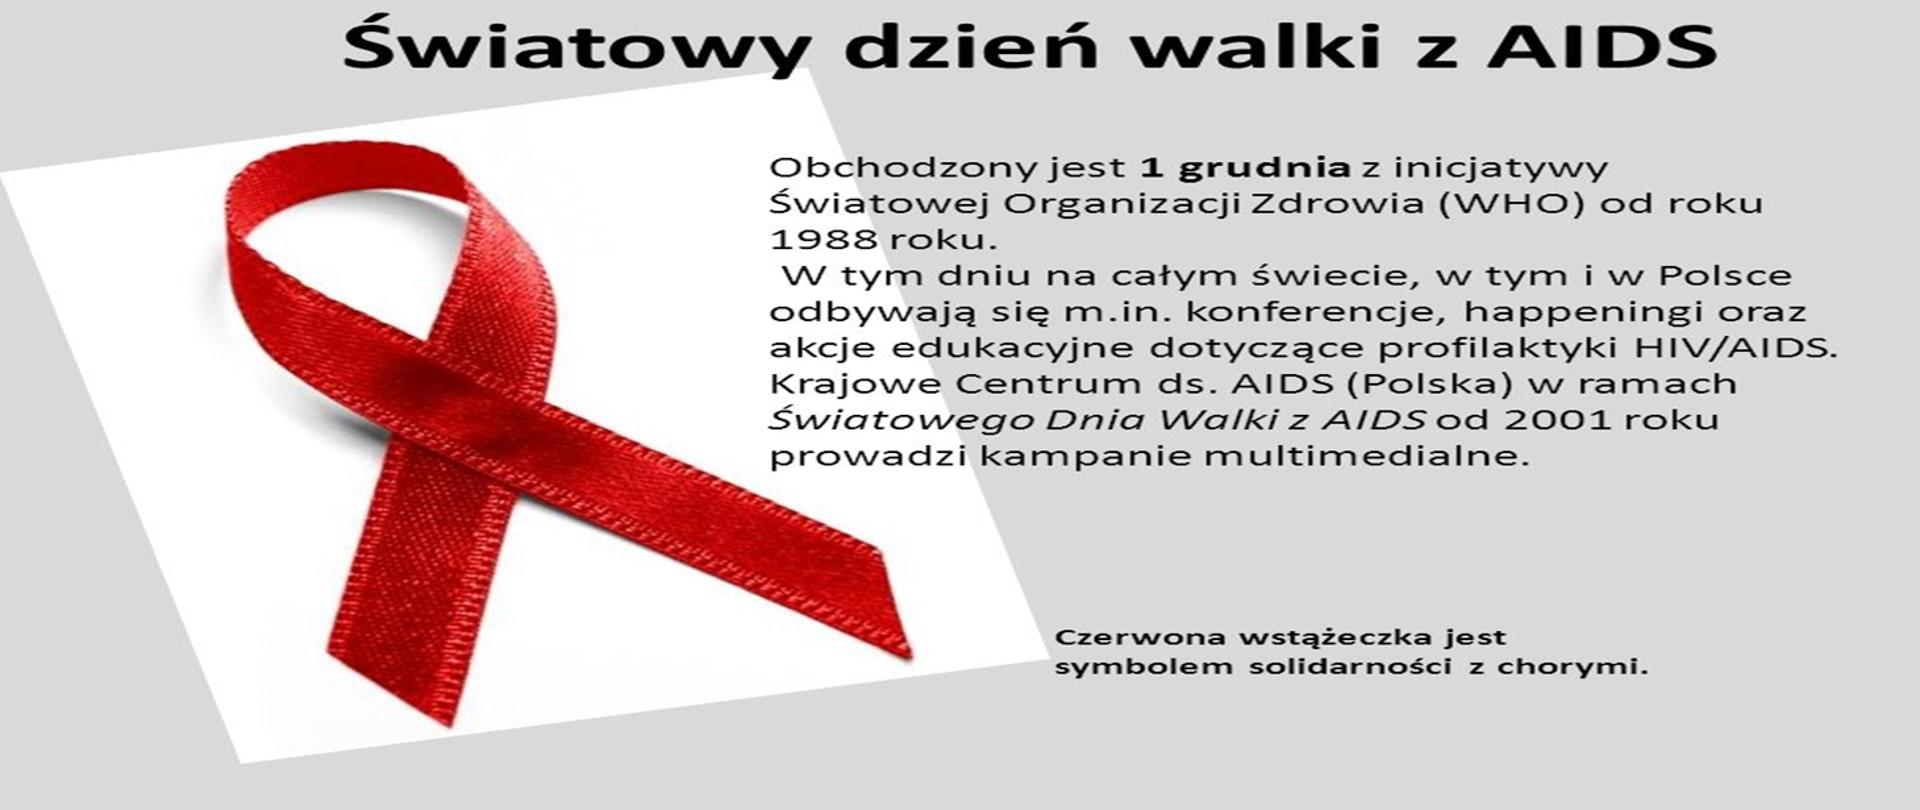 Obchodzony jest 1 grudnia z inicjatywy Światowej Organizacji Zdrowia (WHO) od roku 1988 roku. W tym dniu na całym świecie, w tym i w Polsce odbywają się m.in. konferencje, happeningi oraz akcje edukacyjne dotyczące profilaktyki HIV/AIDS. Krajowe Centrum ds. AIDS (Polska) w ramach Światowego Dnia Walki z AIDS od 2001 roku prowadzi kampanie multimedialne. Czerwona wstążeczka jest symbolem solidarności z chorymi.